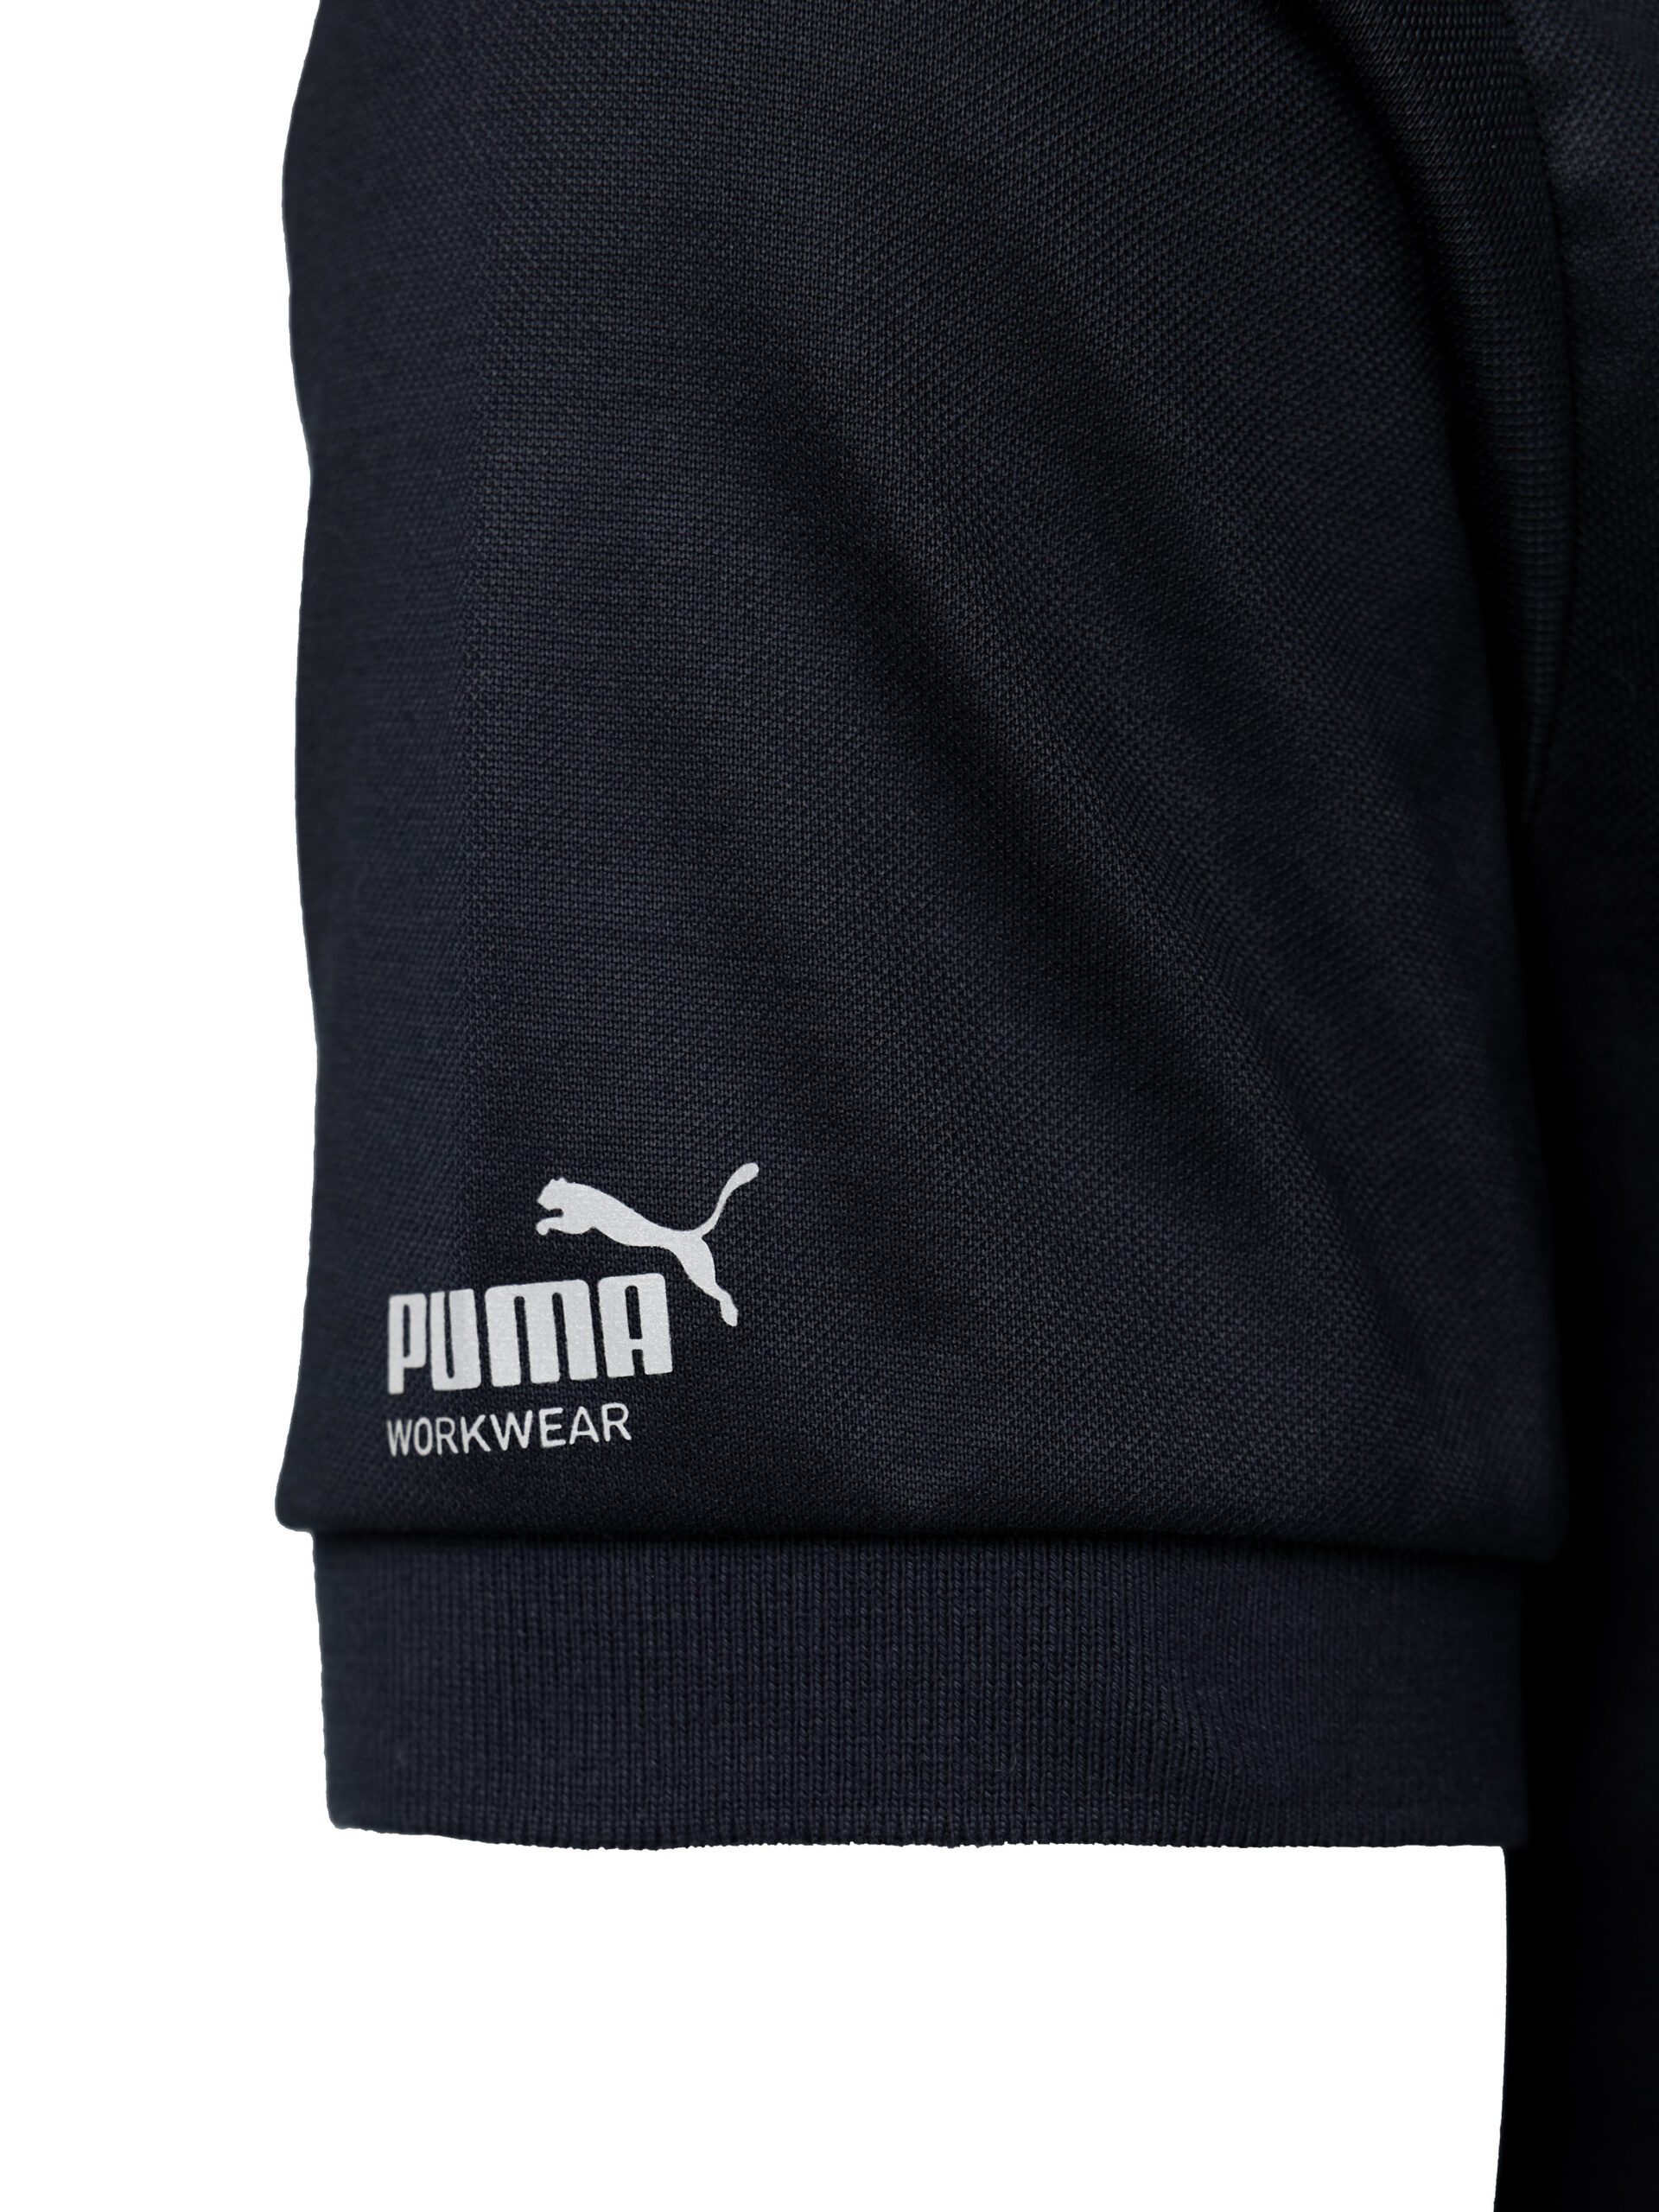 PUMA Workwear Essentials Men\'s Polo Shirt Workwear | PUMA